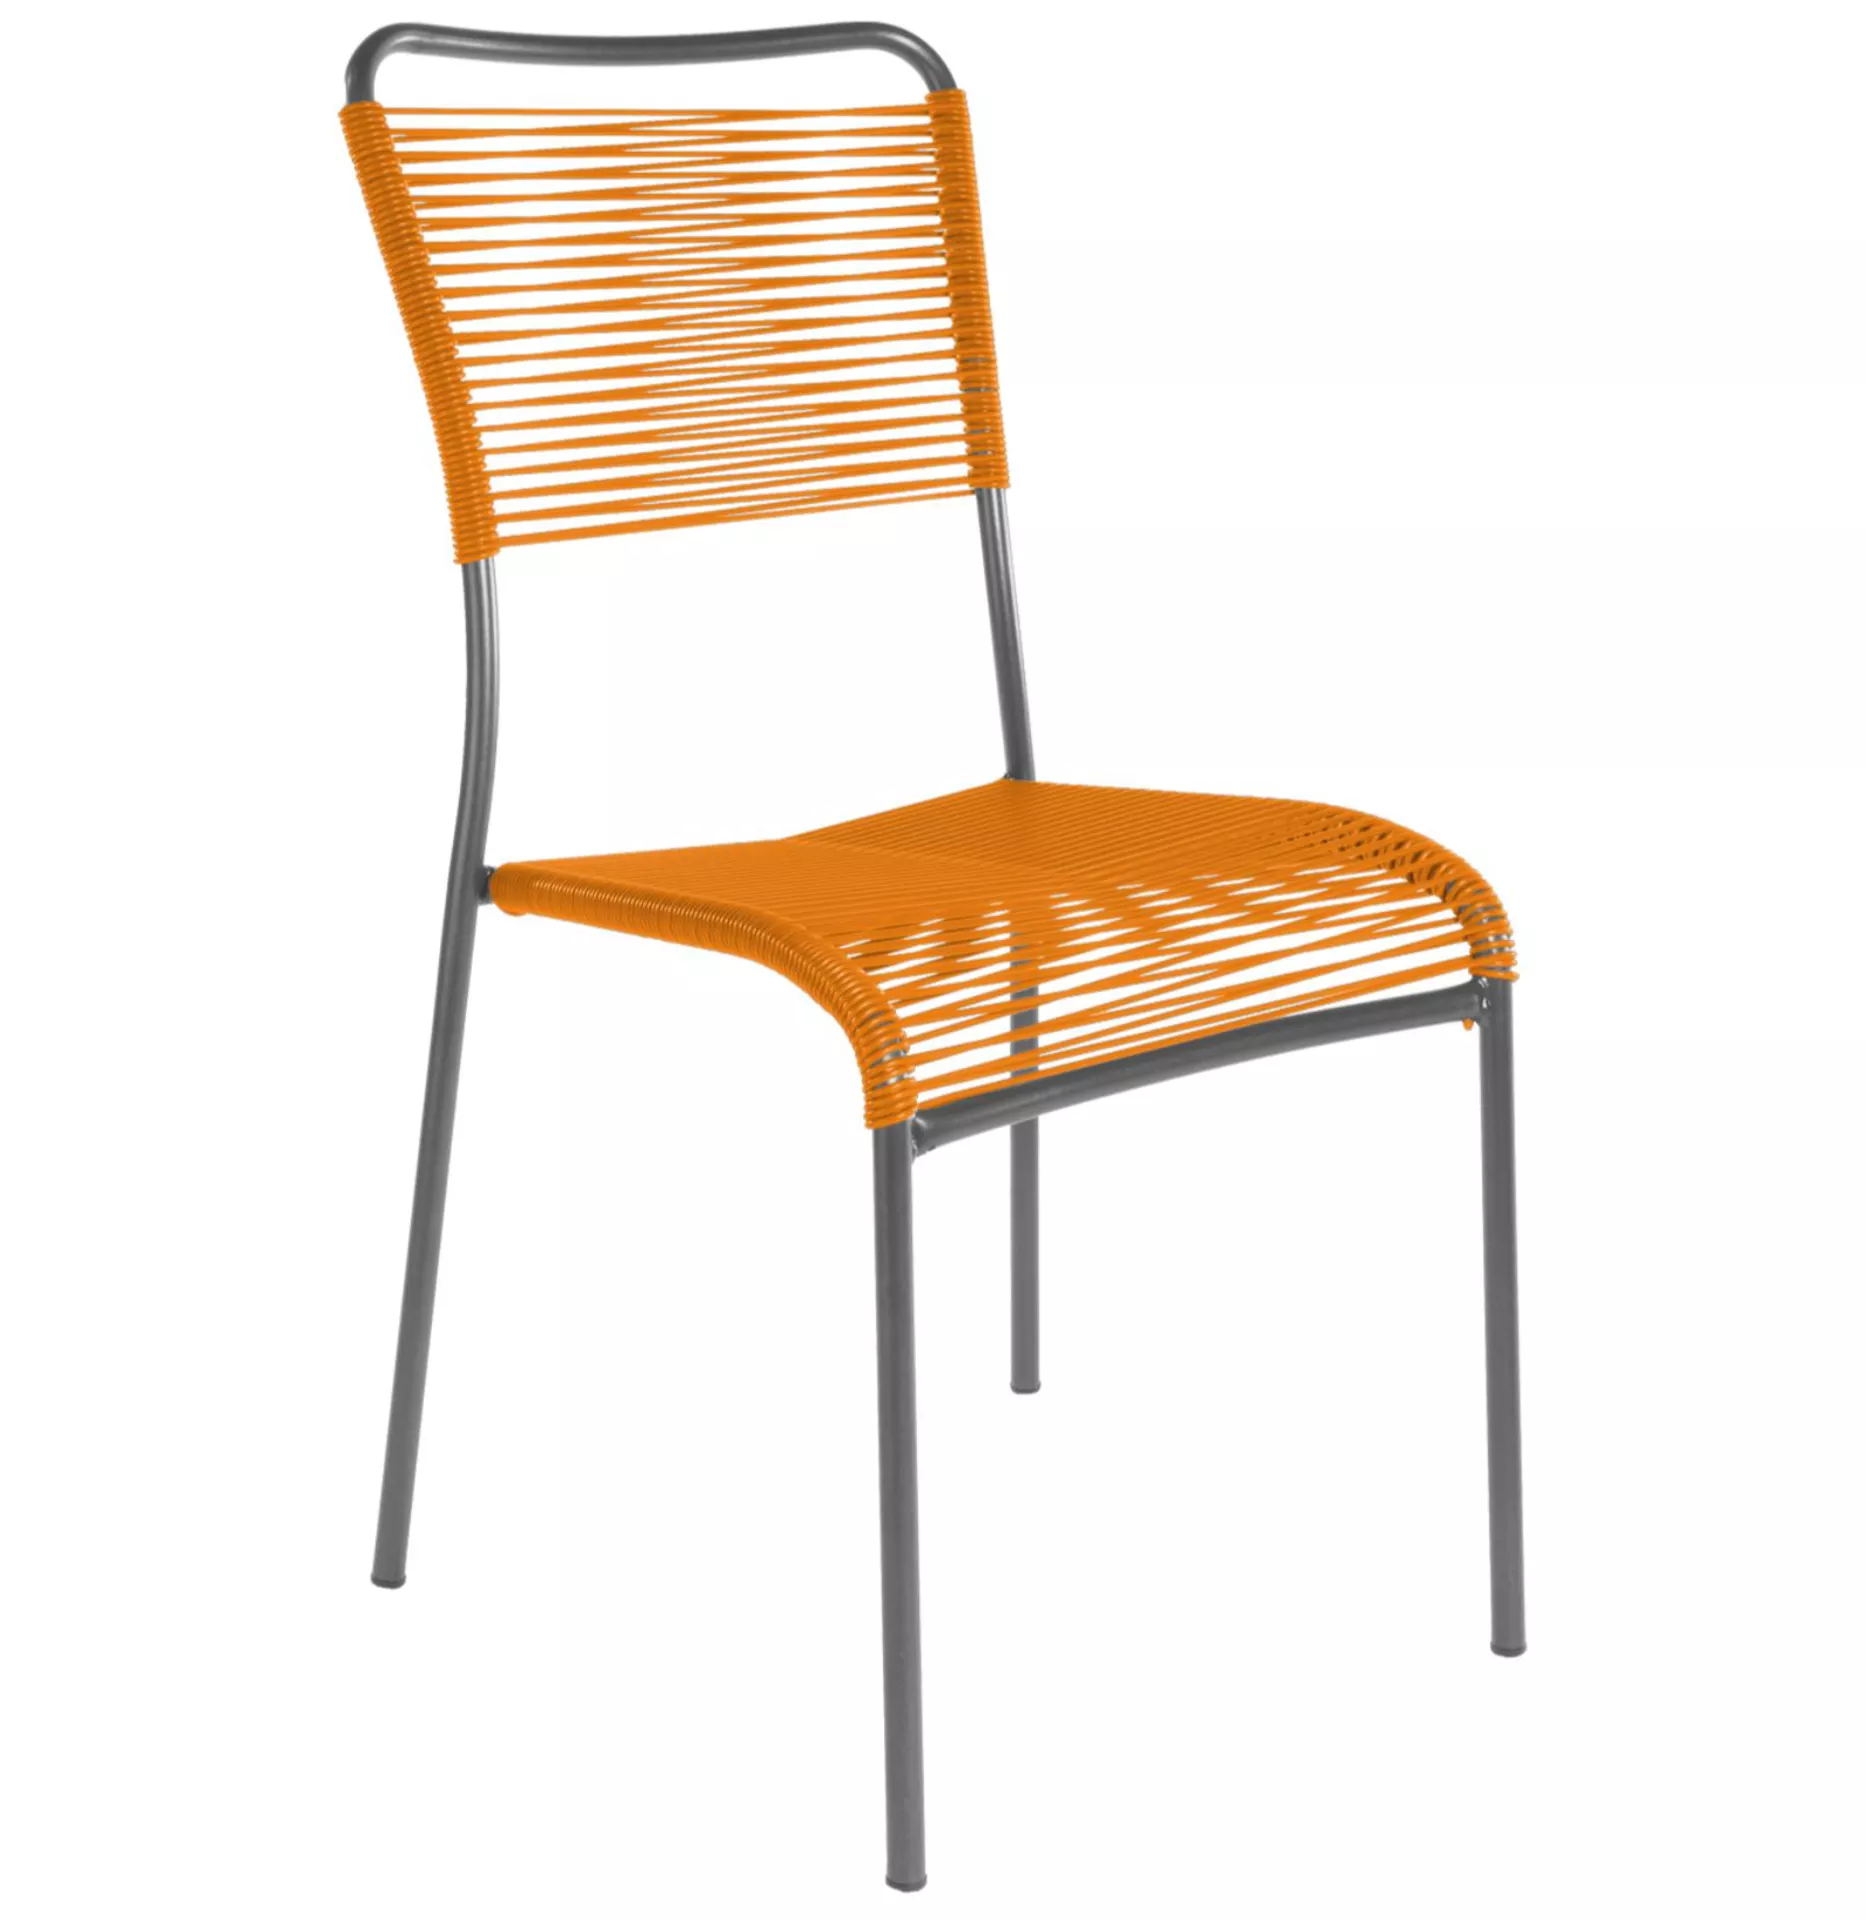 Spaghetti-Stuhl Mendrisio Schaffner / Farbe: Orange